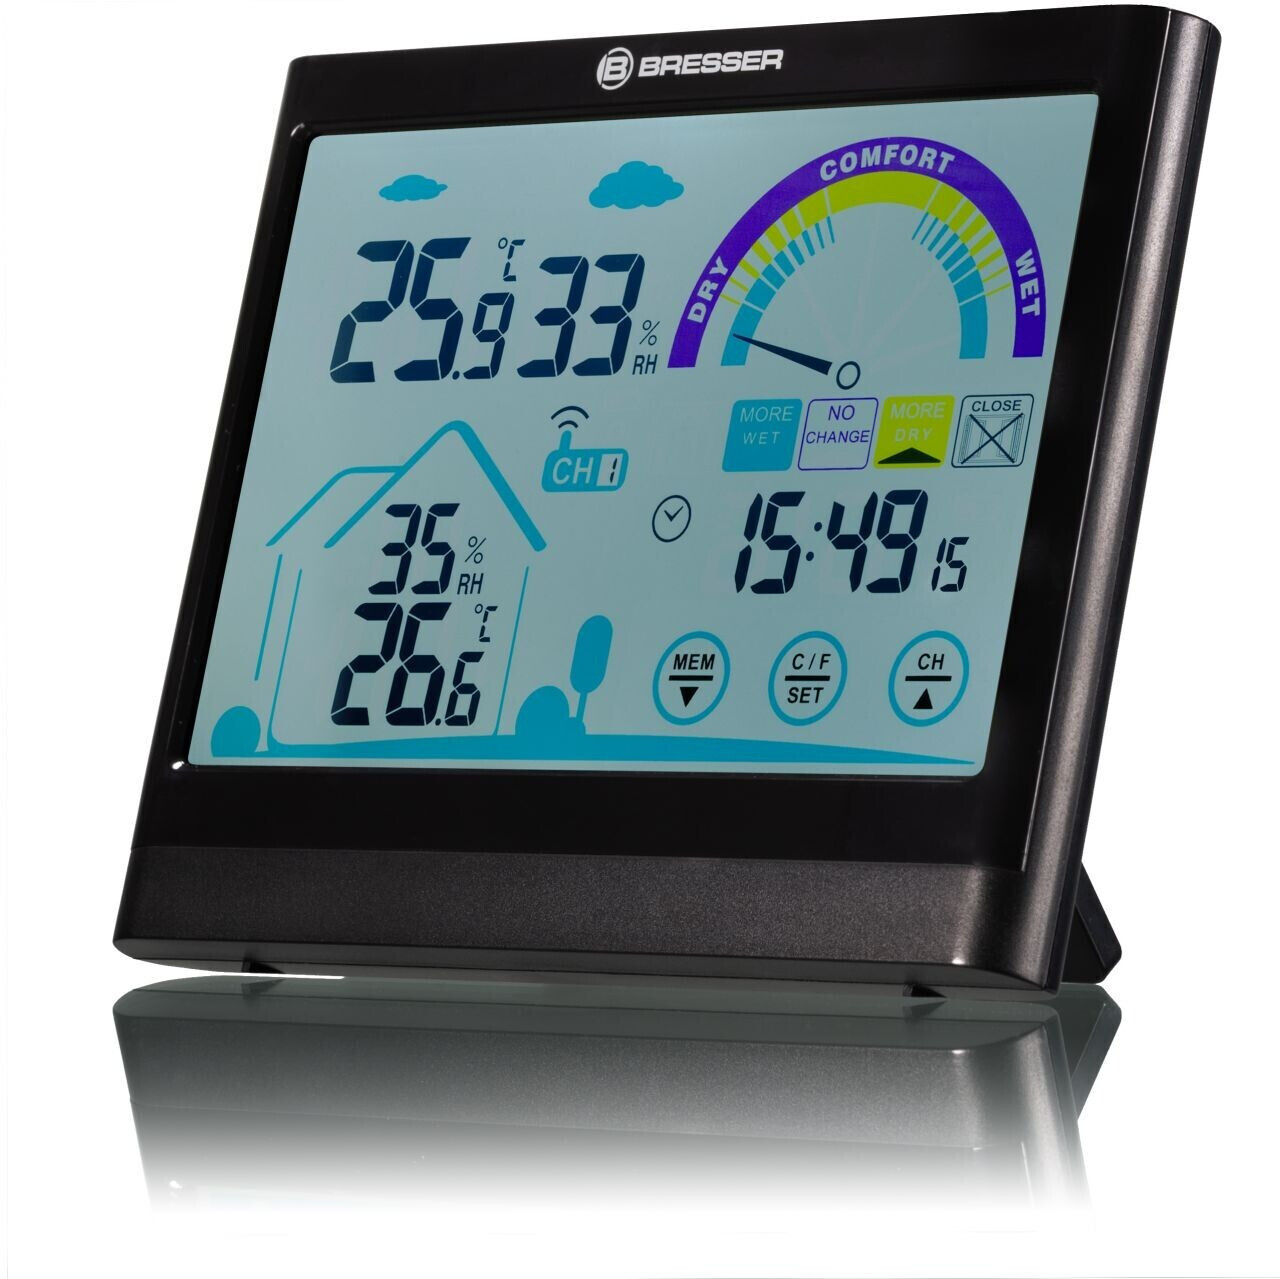 TFA Digitales Innen-Außen-Thermometer Weiß kaufen bei OBI